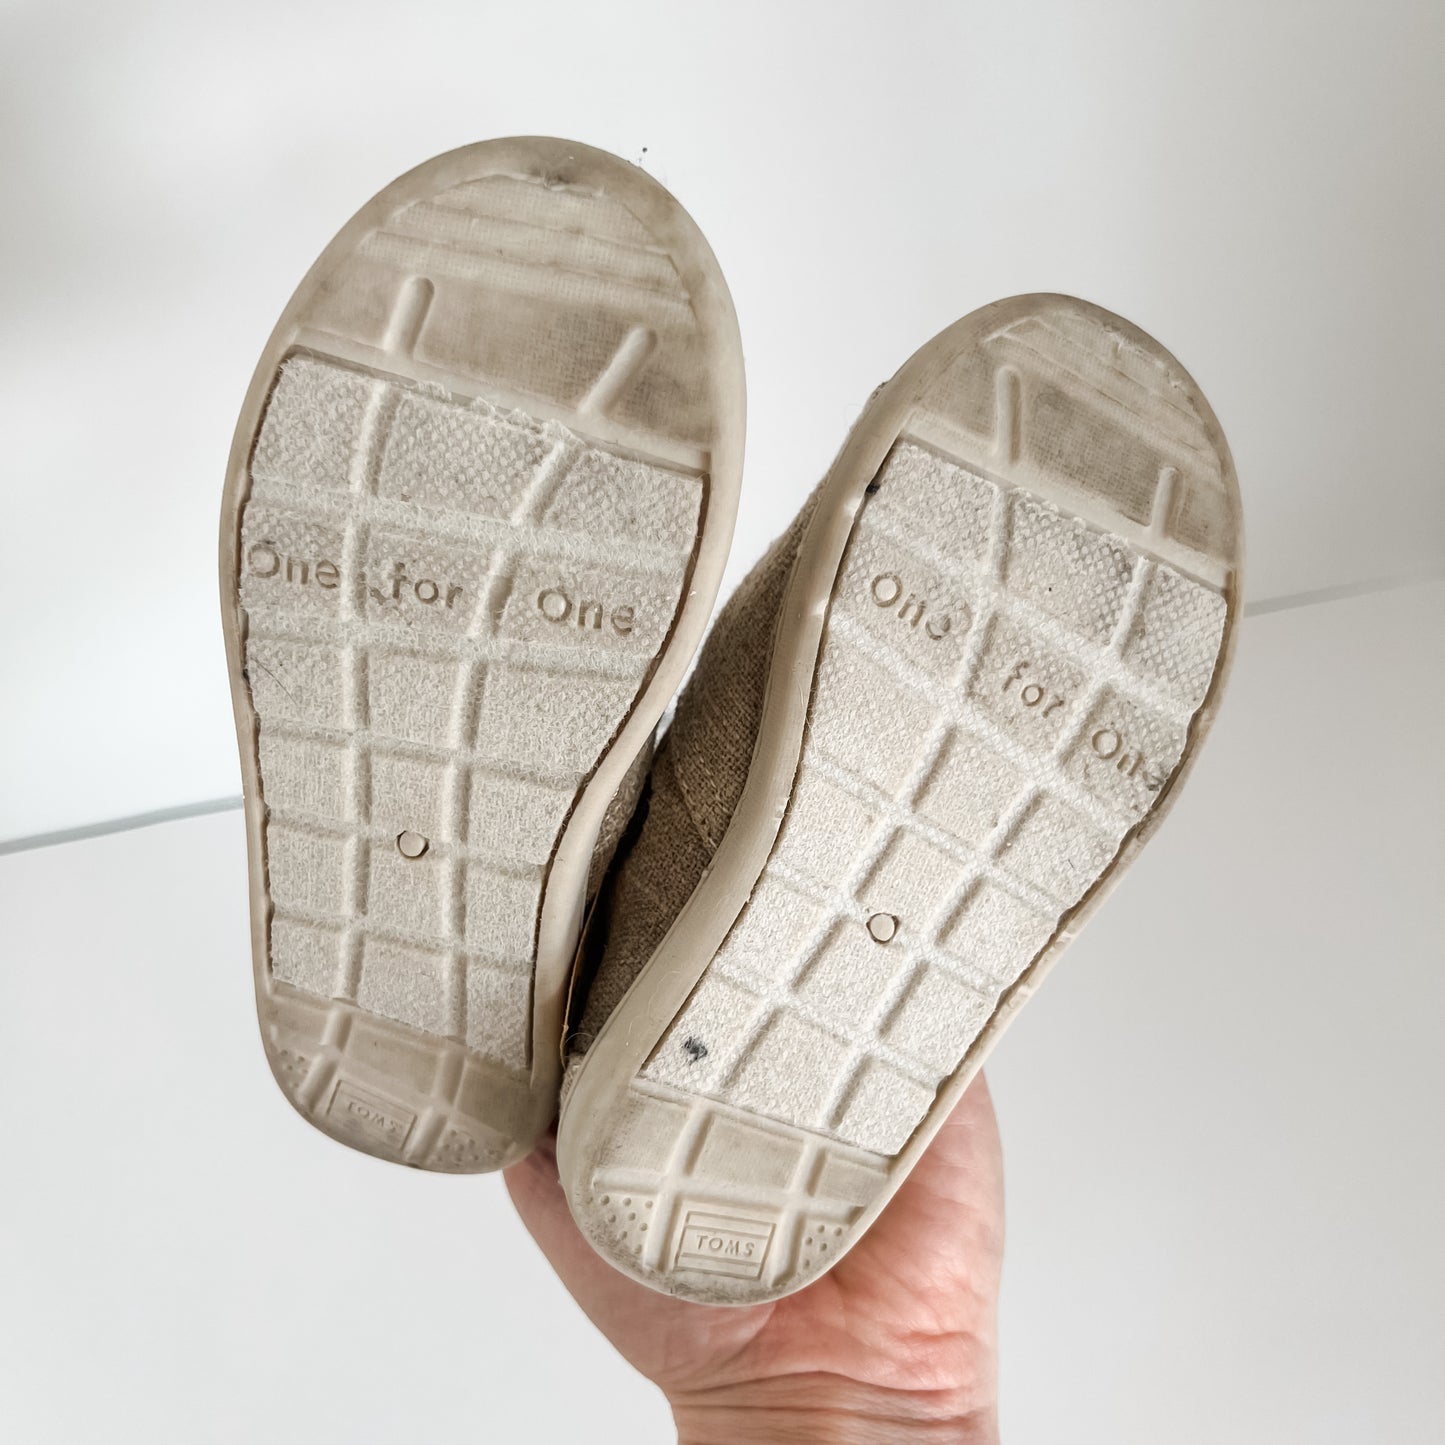 Tom’s Slip-On Shoes (8T)